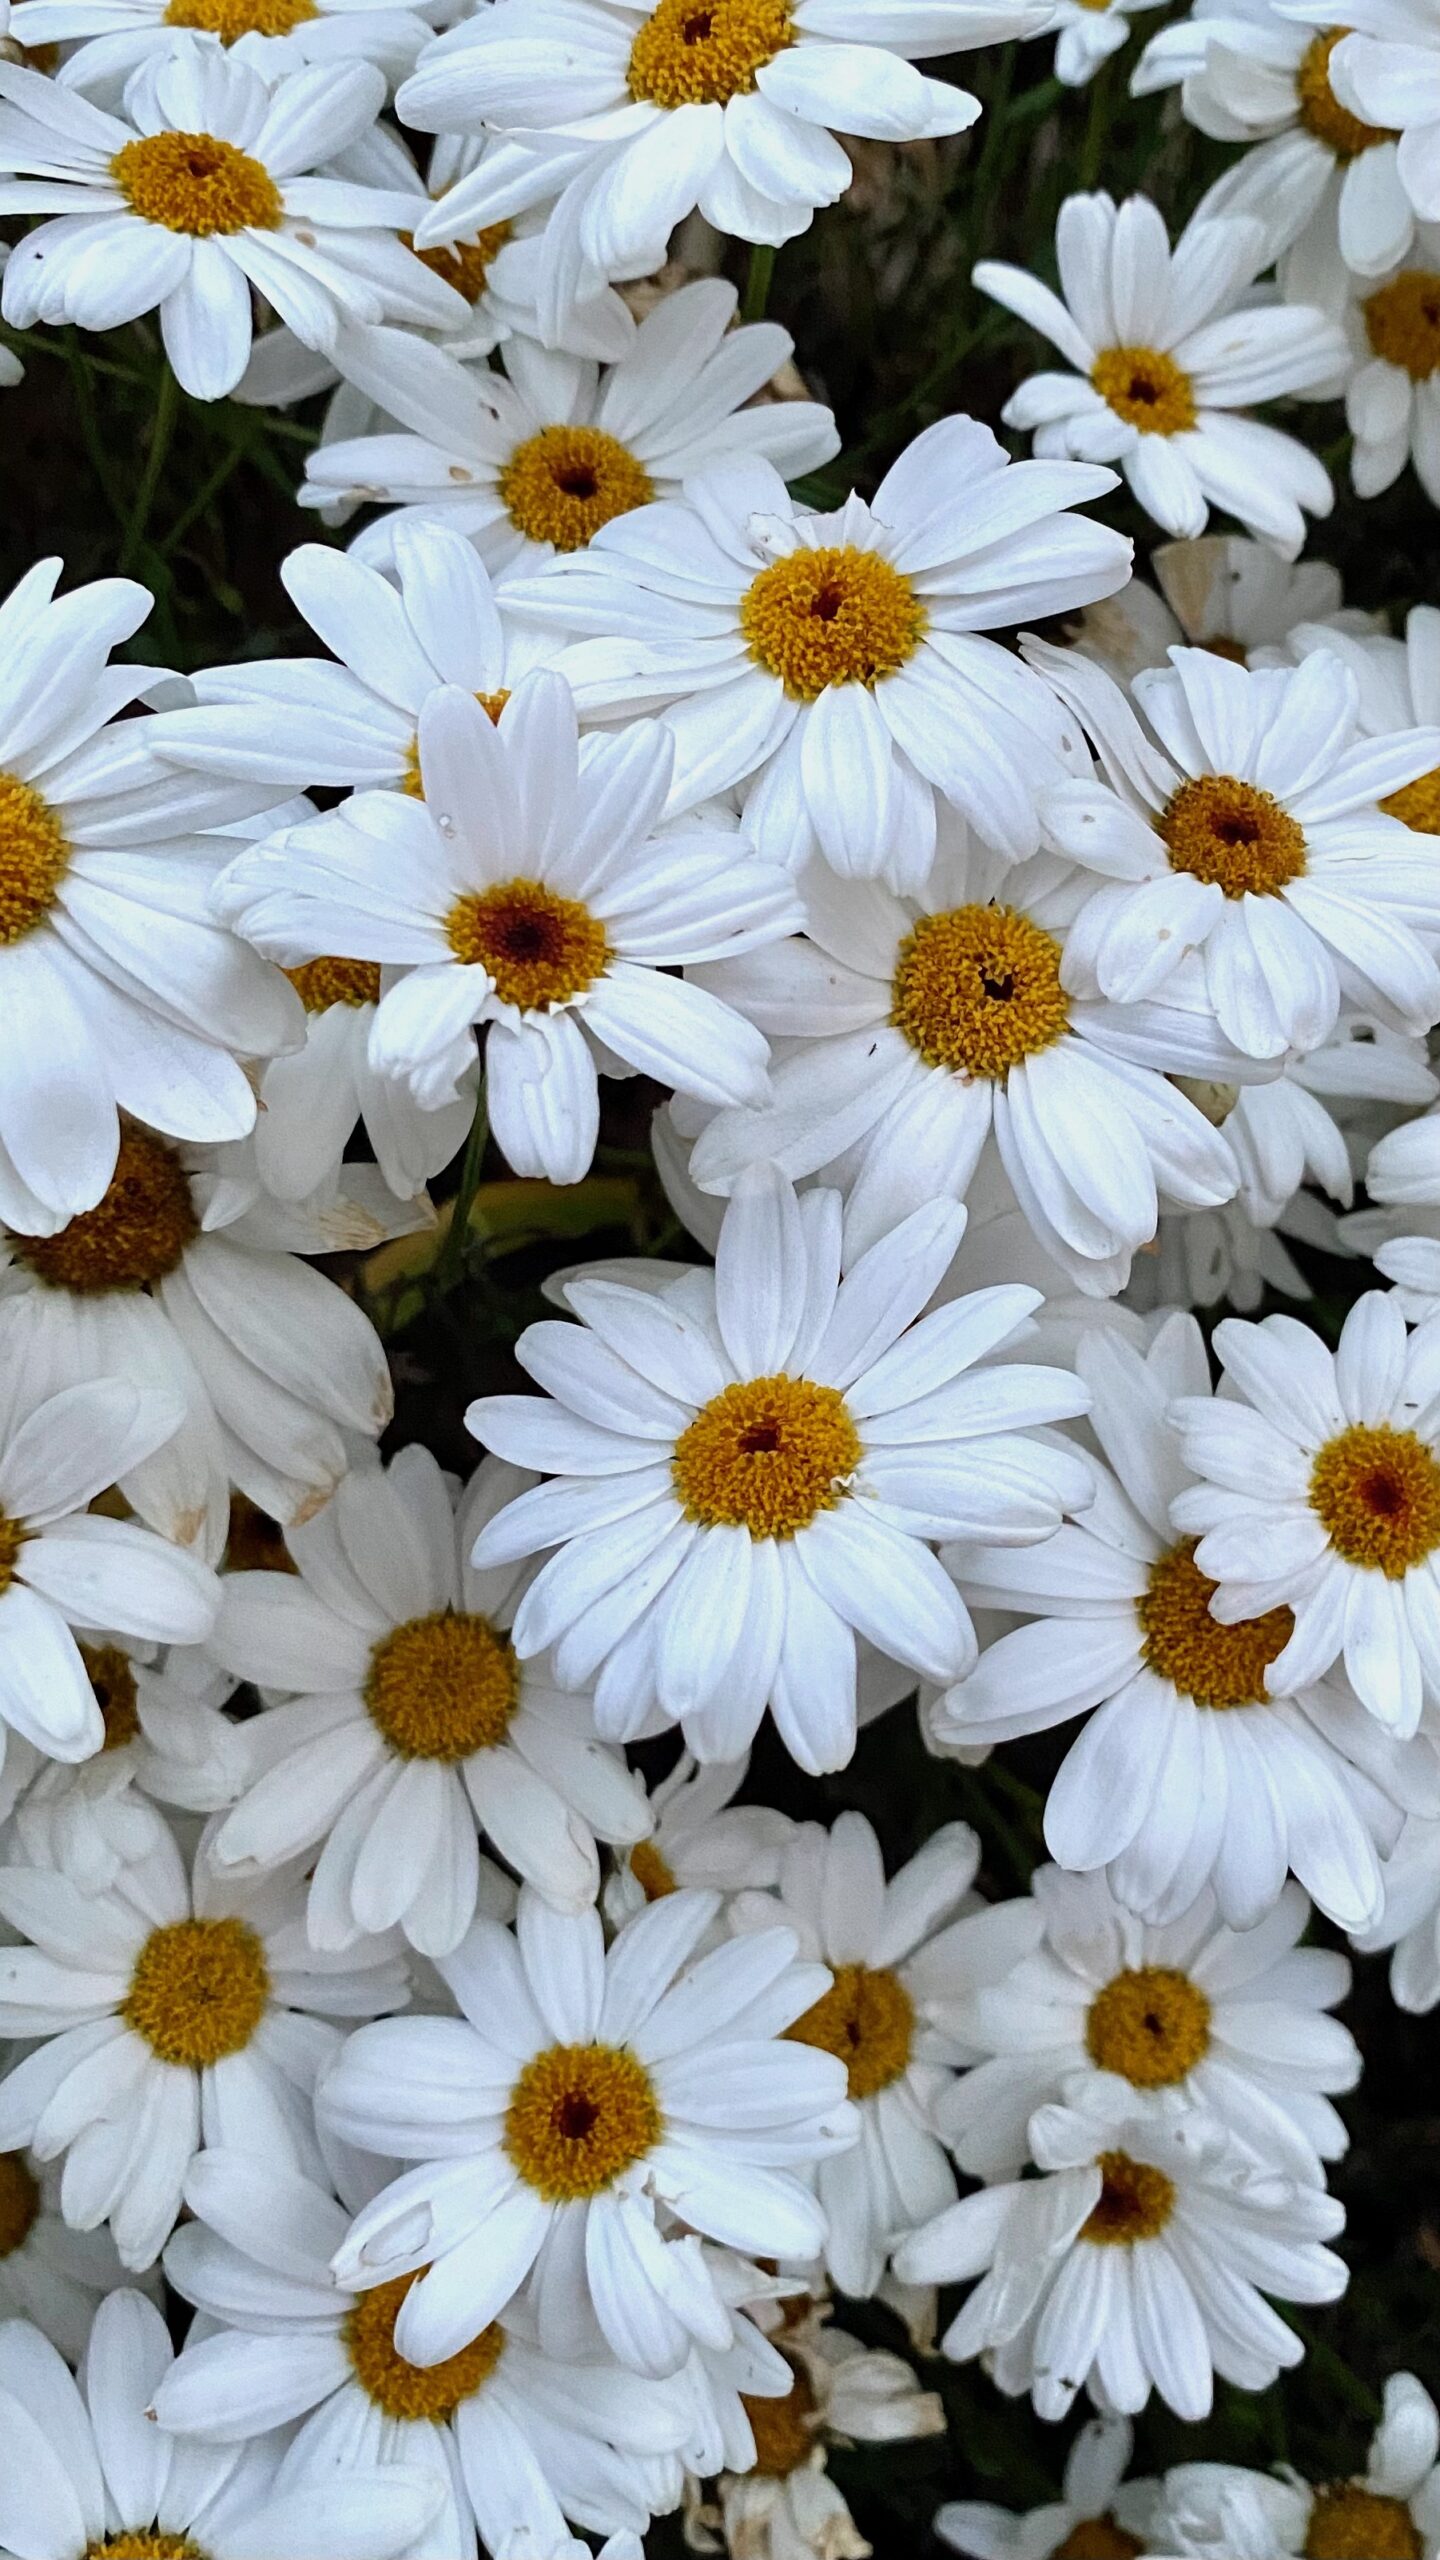 White daisies in my garden